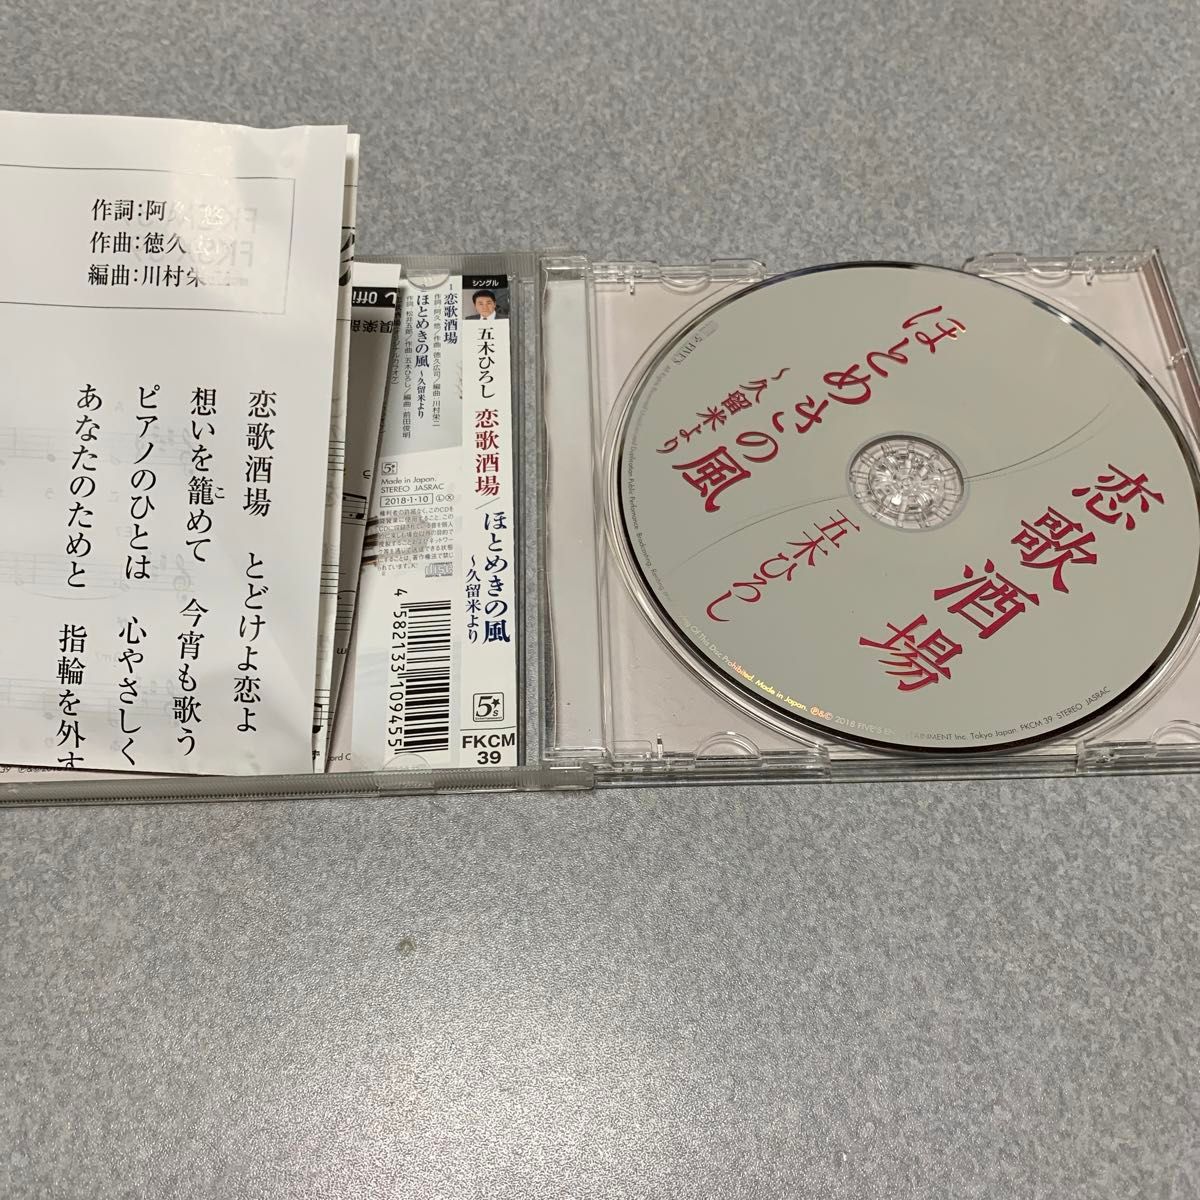 【合わせ買い不可】 恋歌酒場/ほとめきの風 CD 五木ひろし